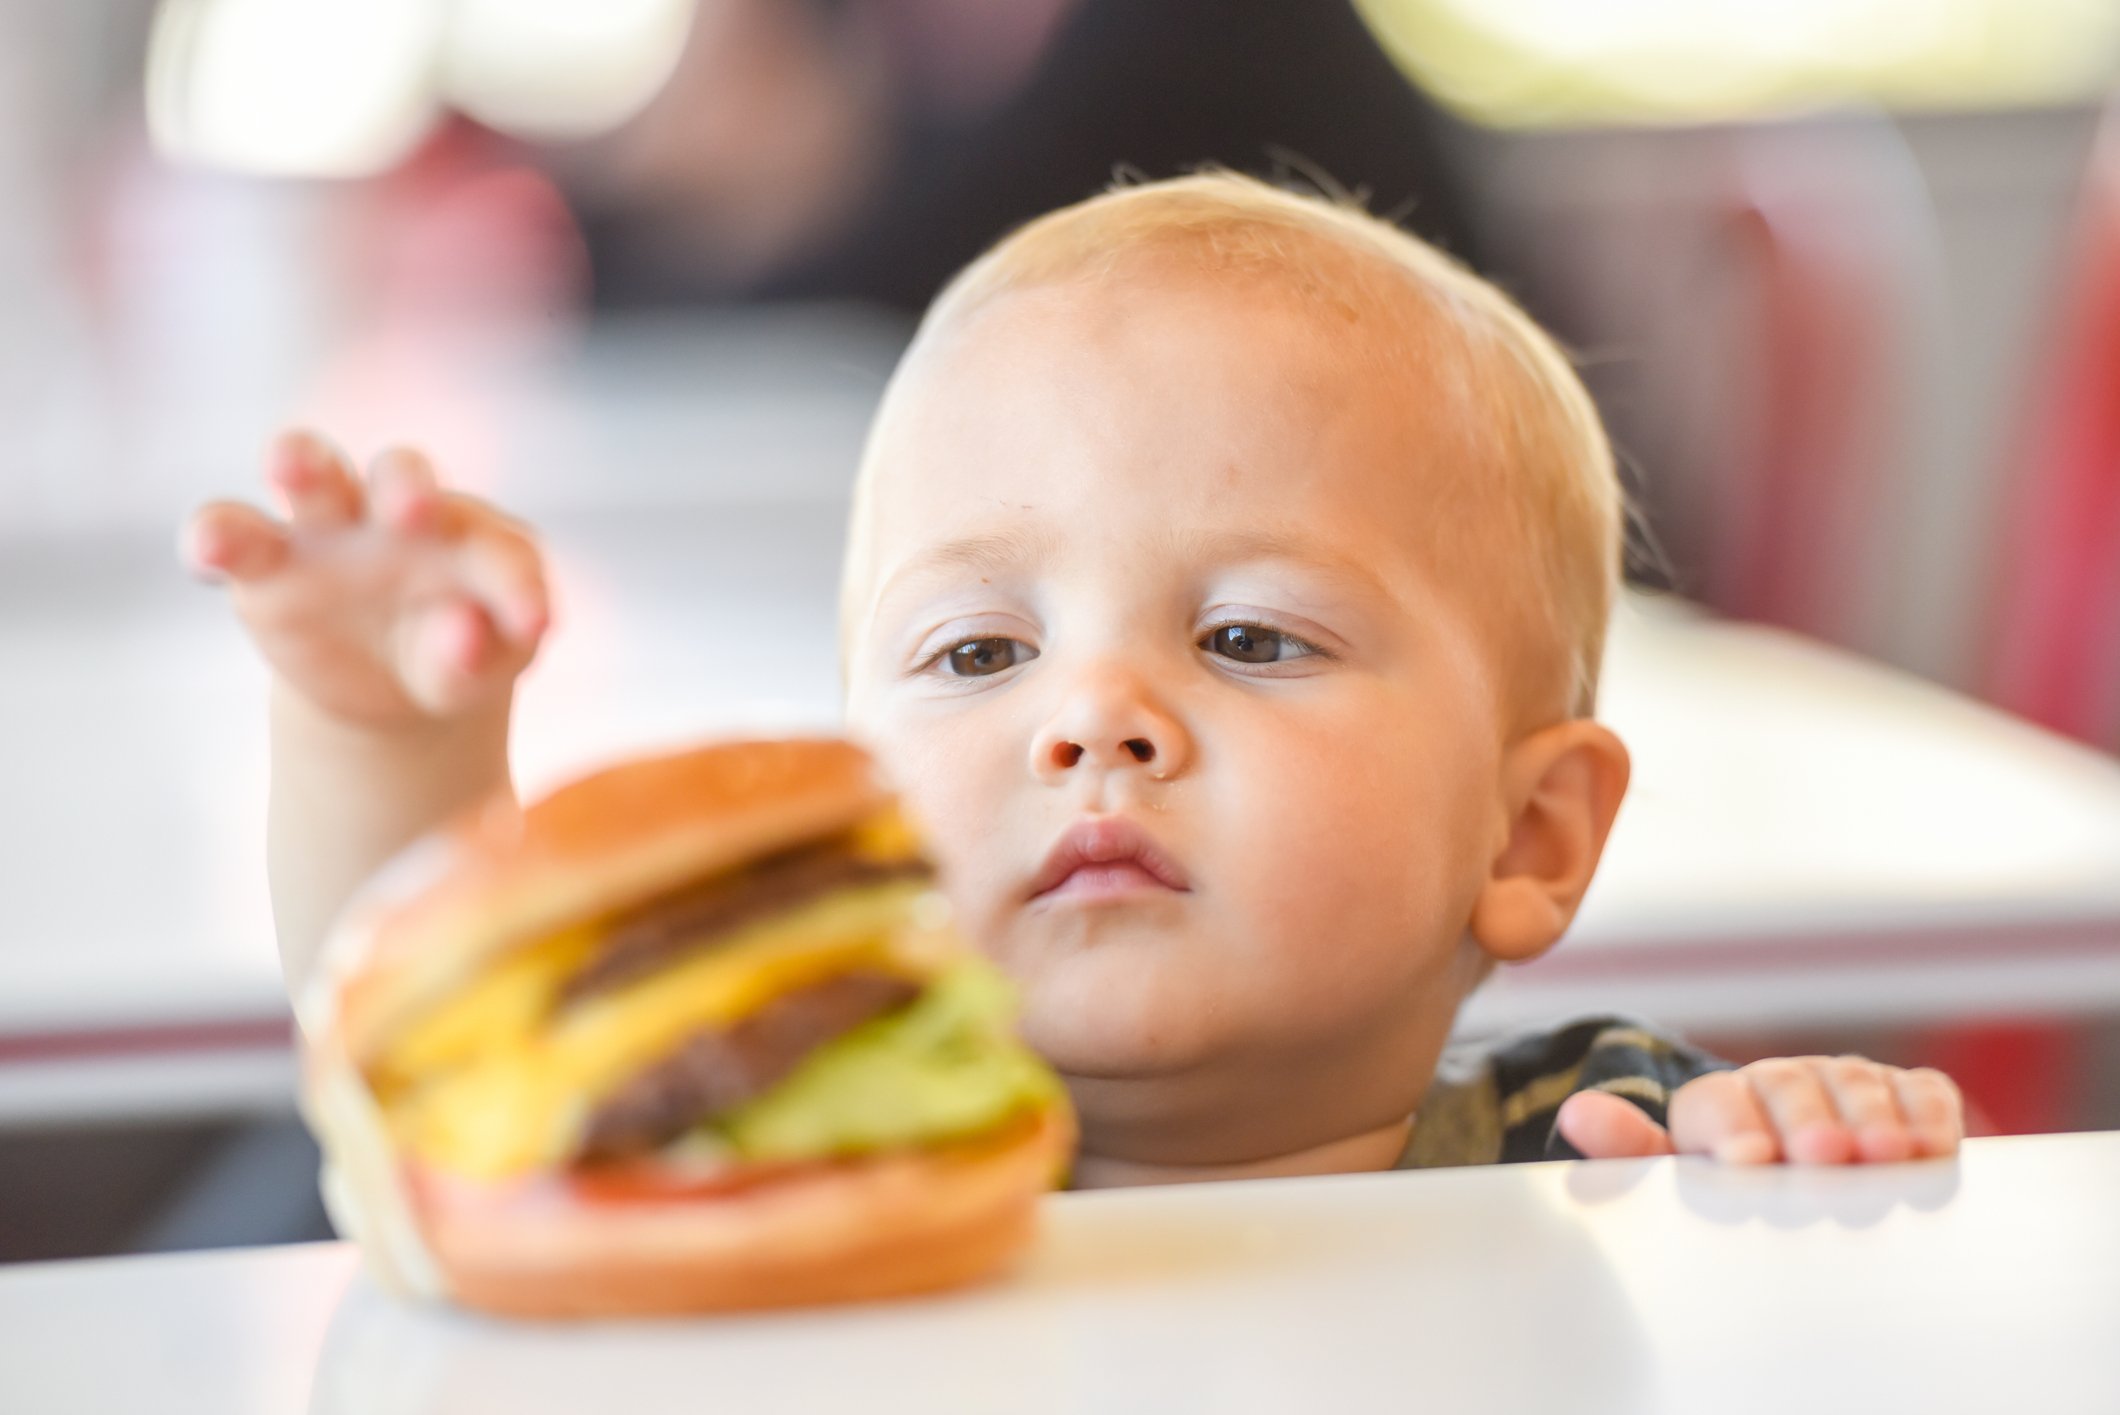 Baby versucht einen Hamburger zu schnappen  | Quelle: Getty Images